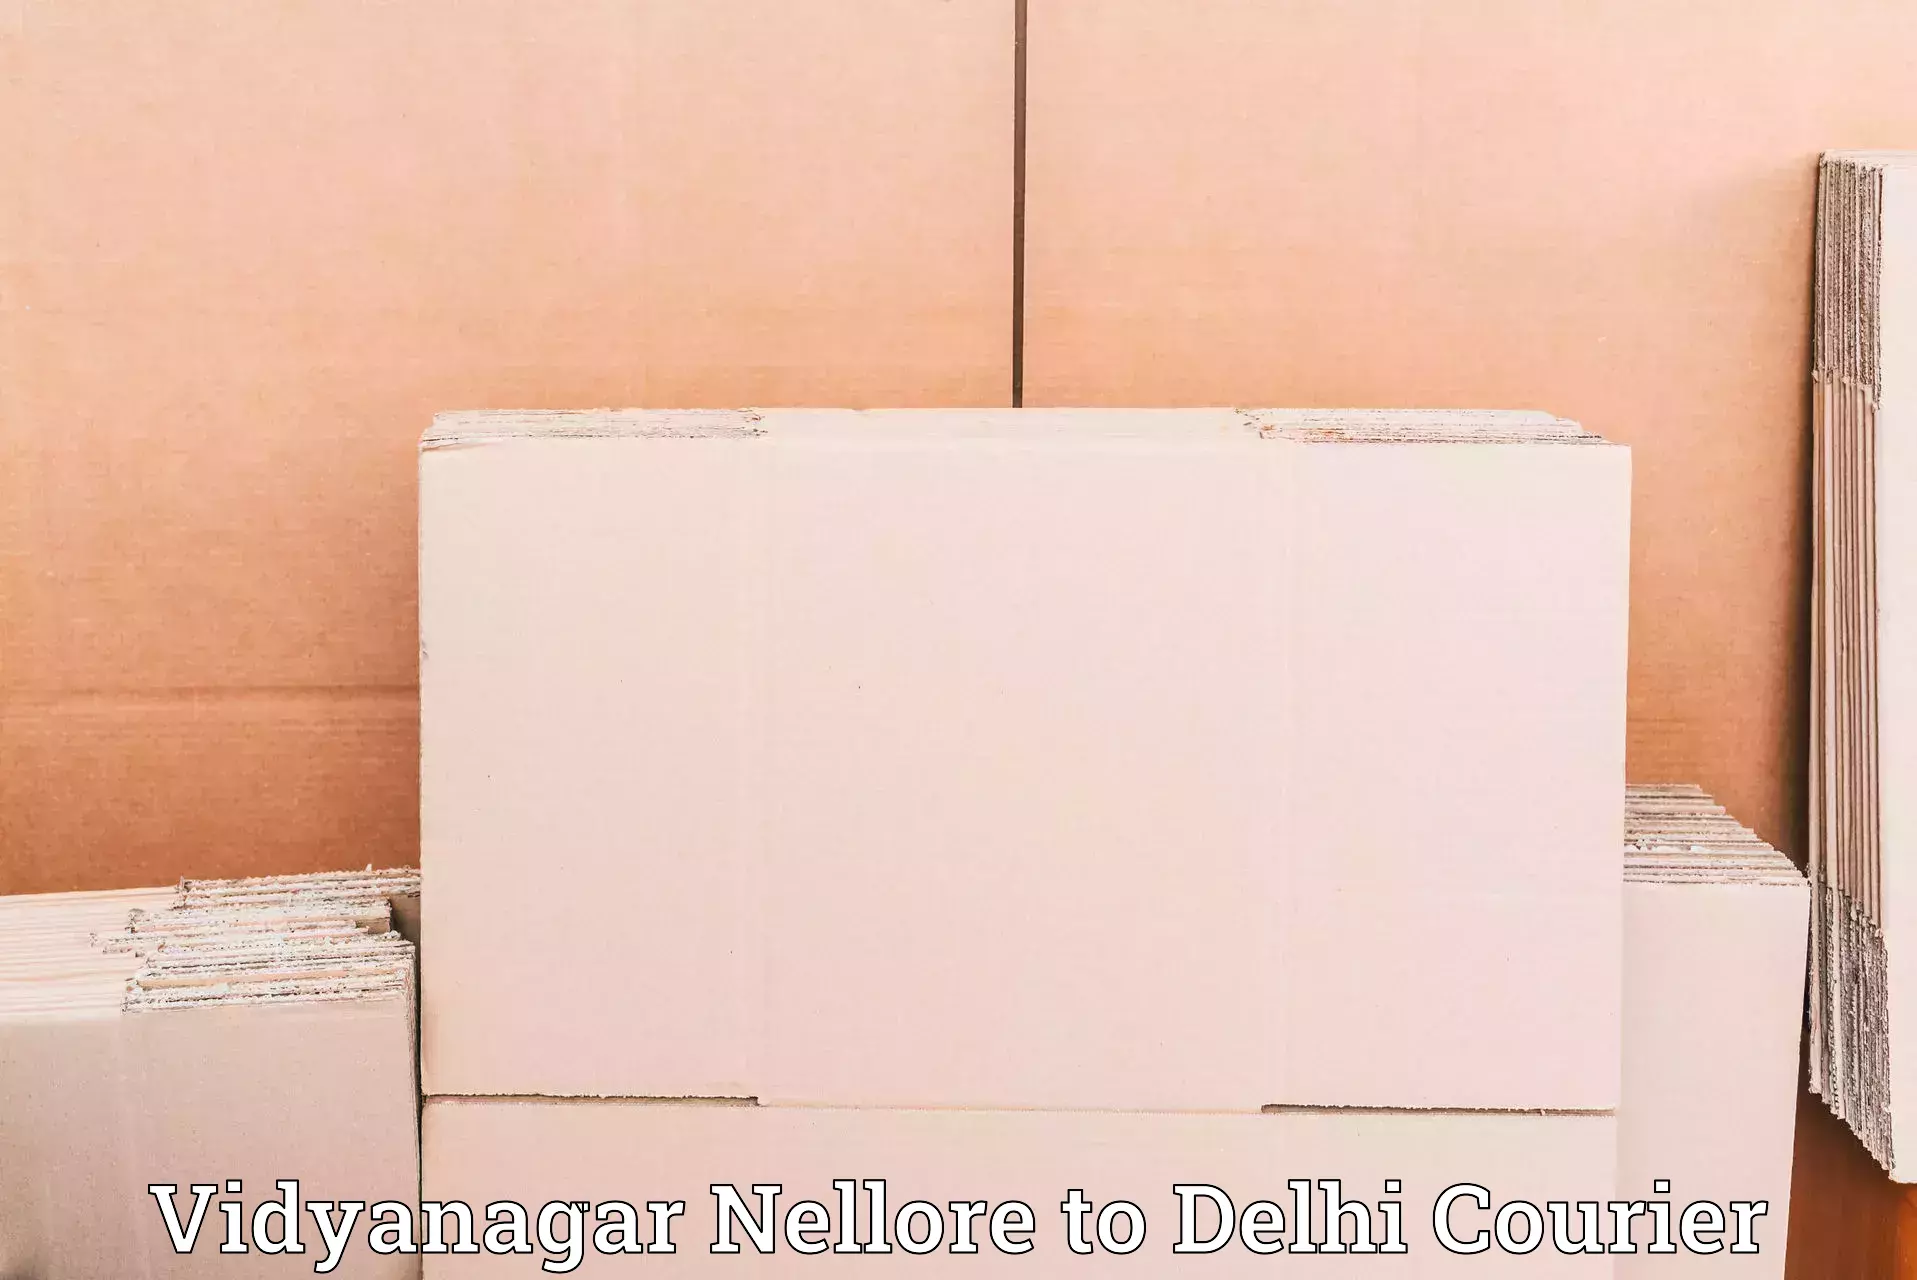 Full-service courier options Vidyanagar Nellore to Jamia Hamdard New Delhi